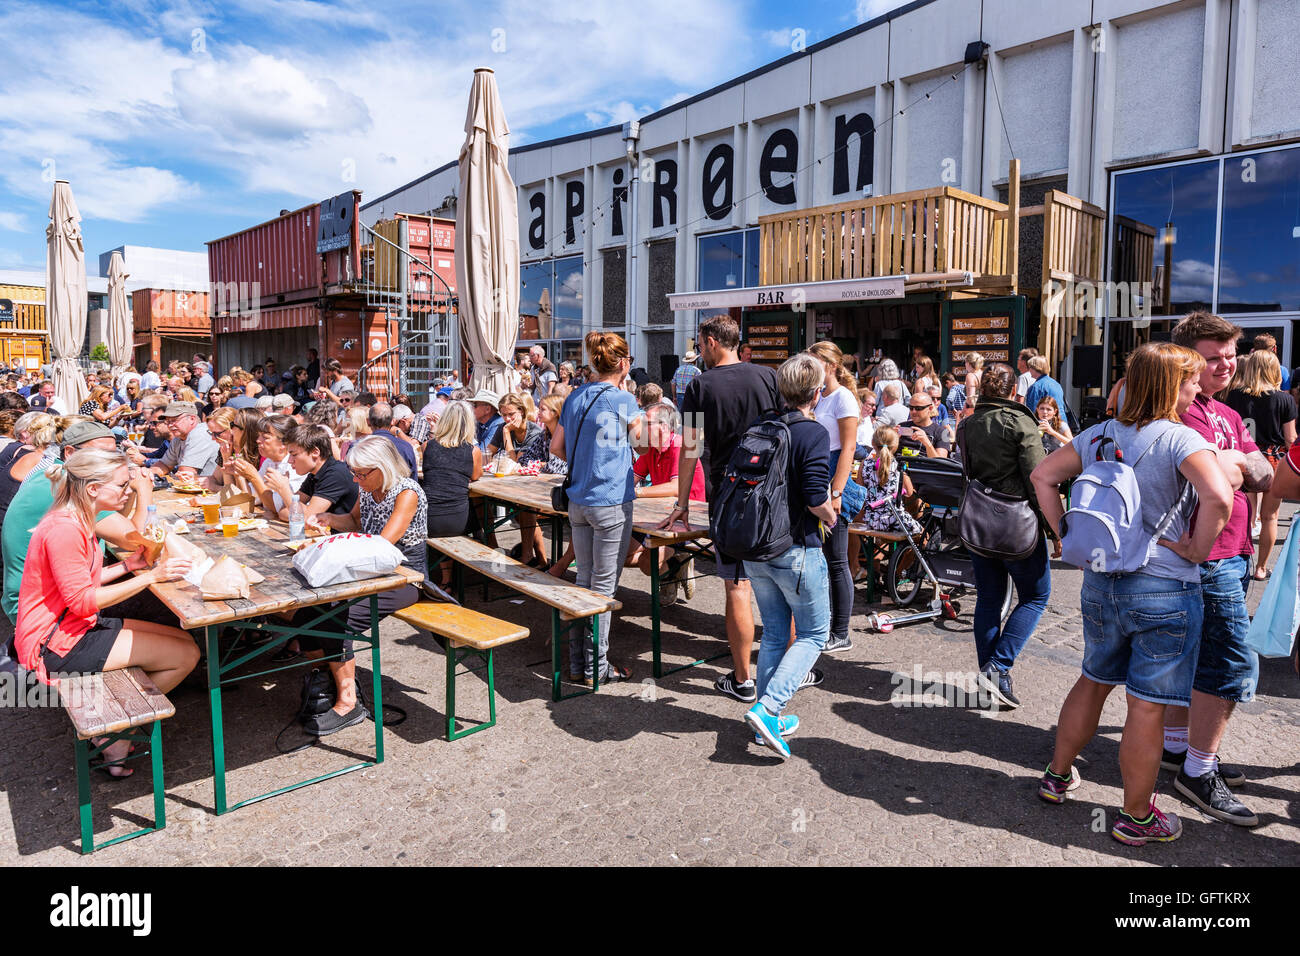 Fuera de asientos en el nuevo restaurante y la comida en la calle real el mercado llamado Papirøen, Papel Isla, Copenhague, Dinamarca Foto de stock